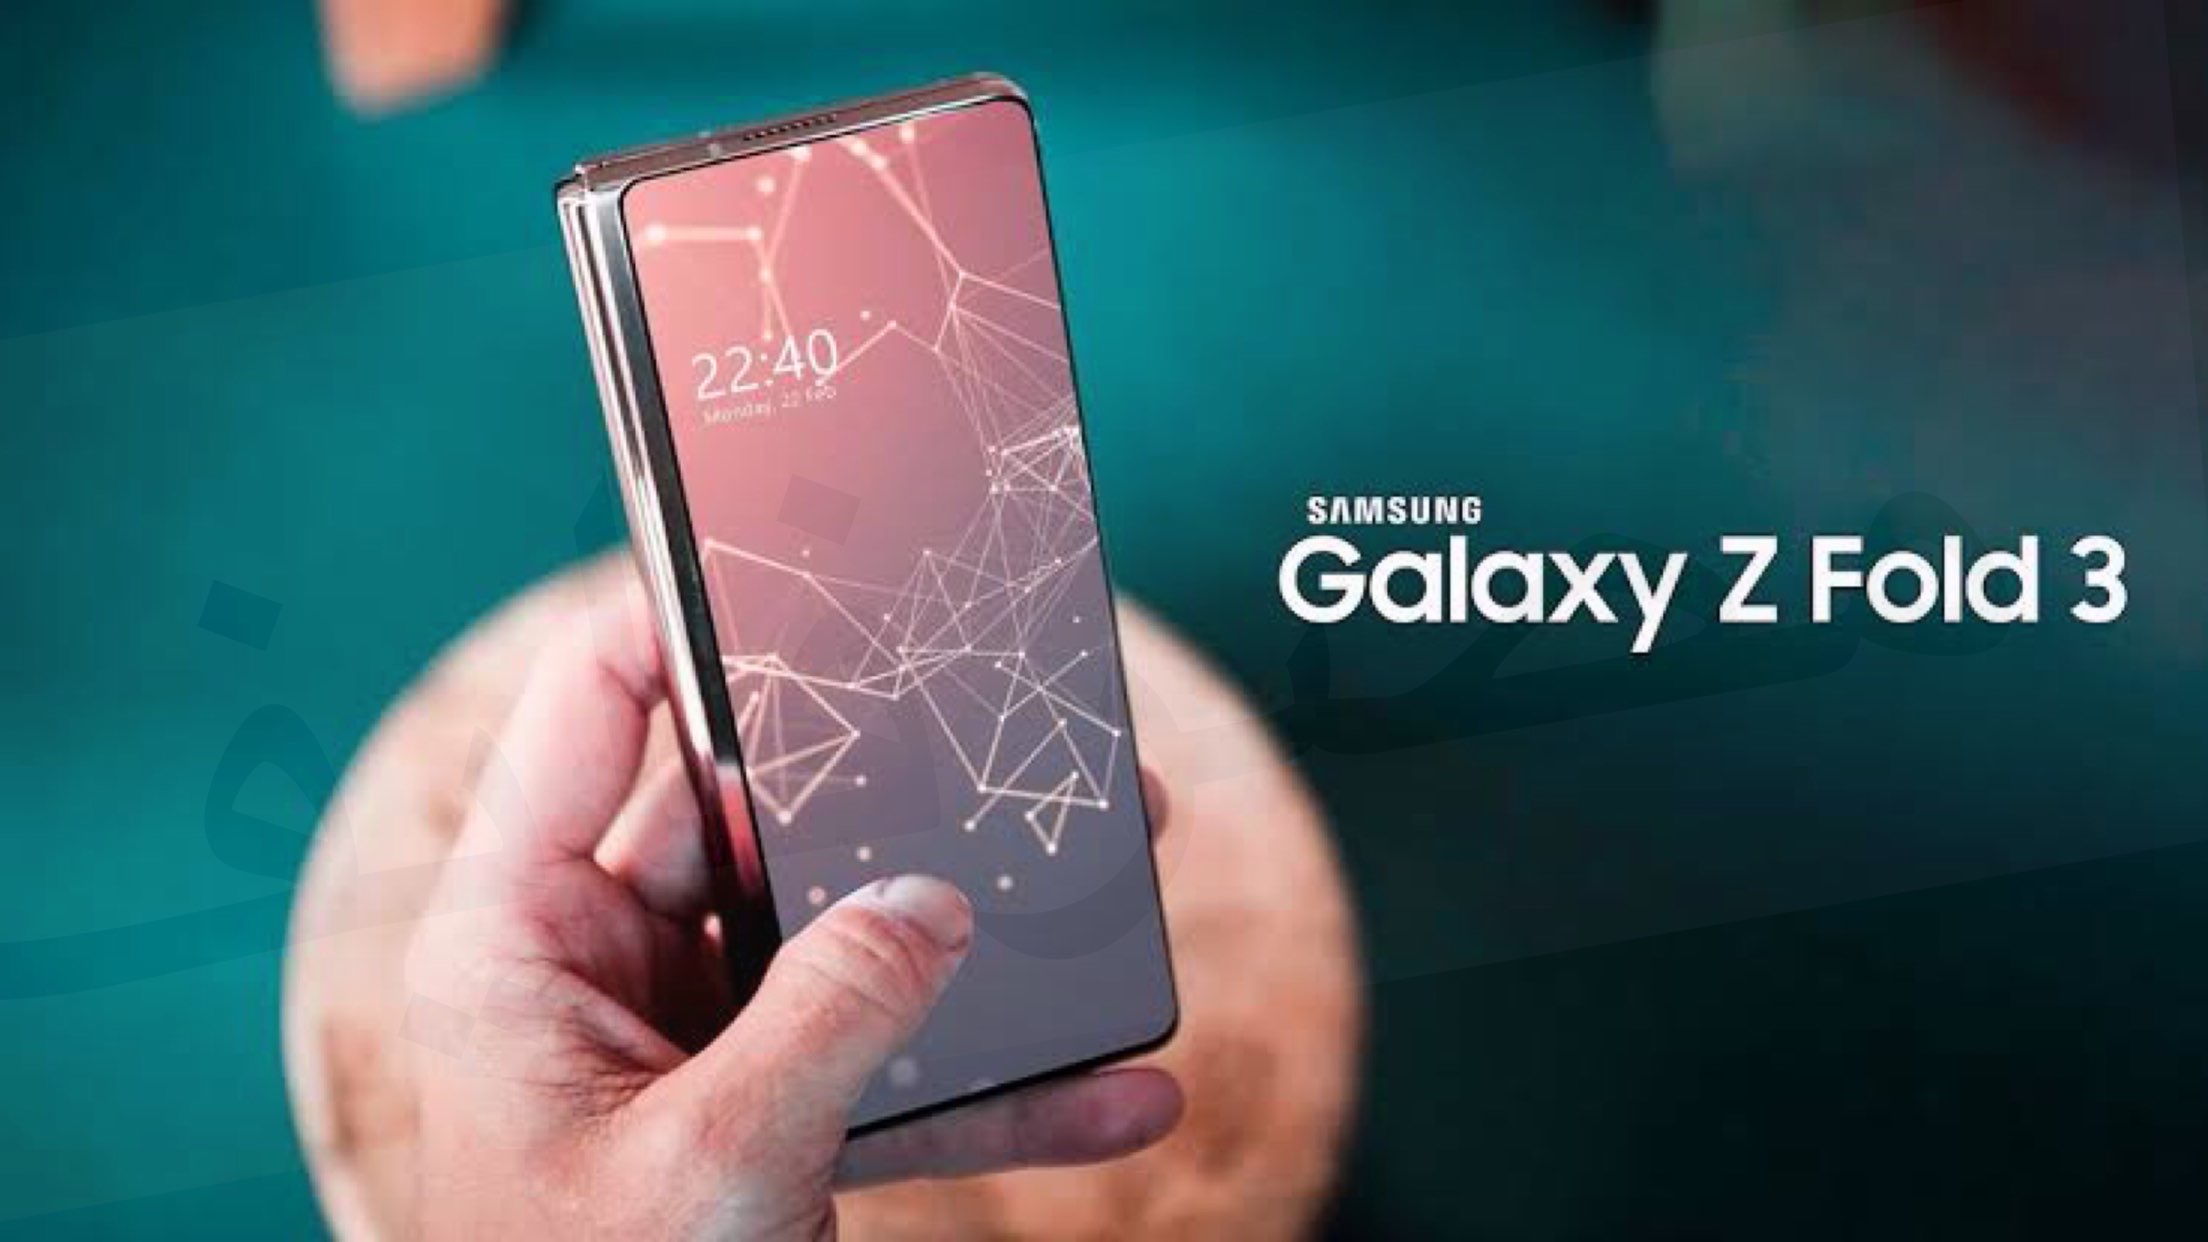 مواصفات وسعر هاتف Galaxy z fold 3 عملاق سامسونج الجديد